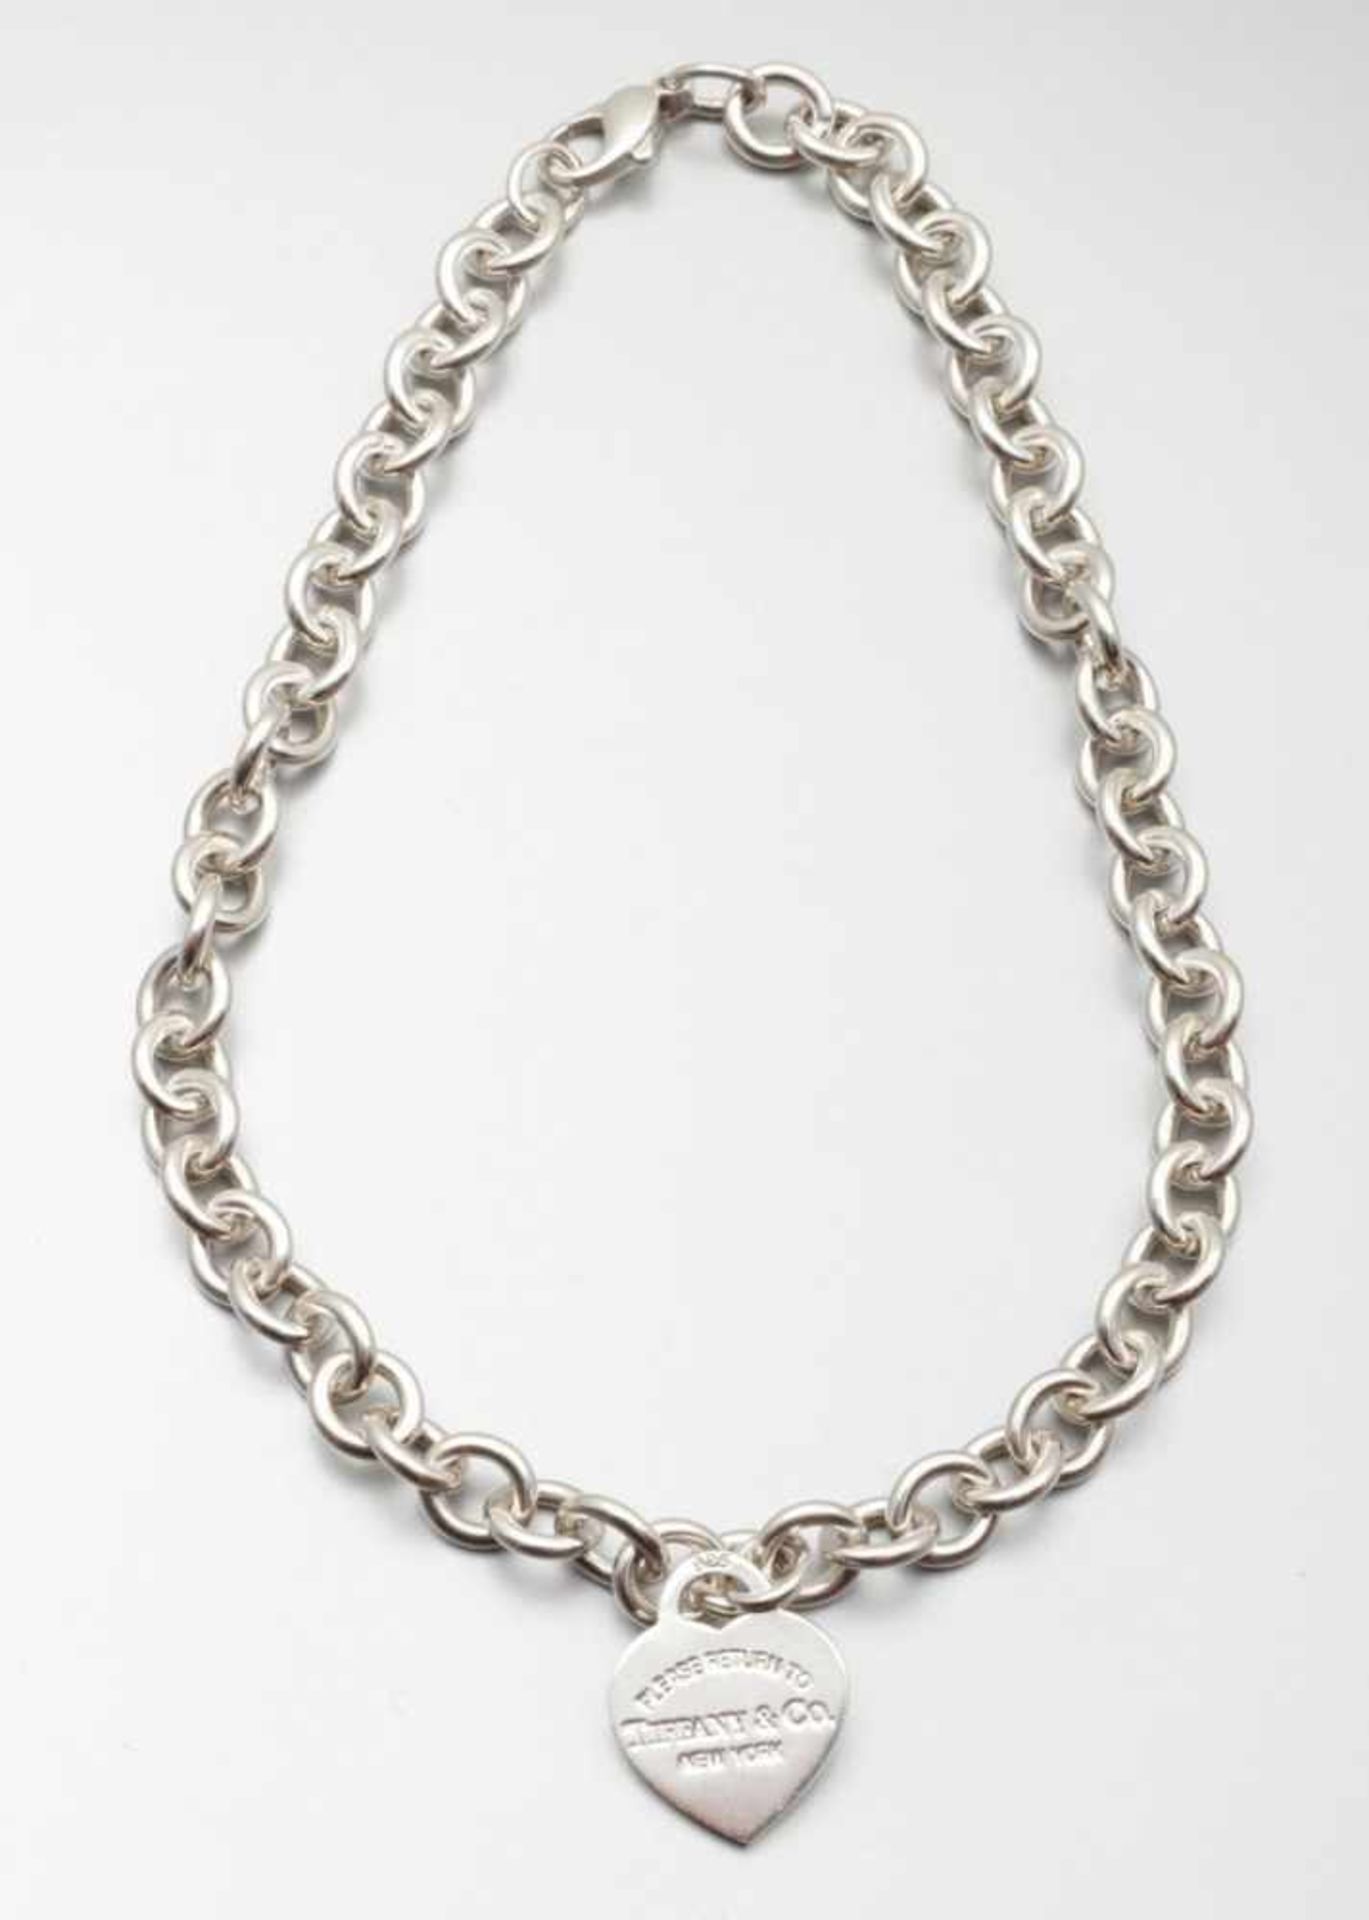 TIFFANY - Halskette mit Herzanhänger in SilberFa. Tiffany & Co. Ltd., USA. Modell: Return to - Bild 2 aus 2